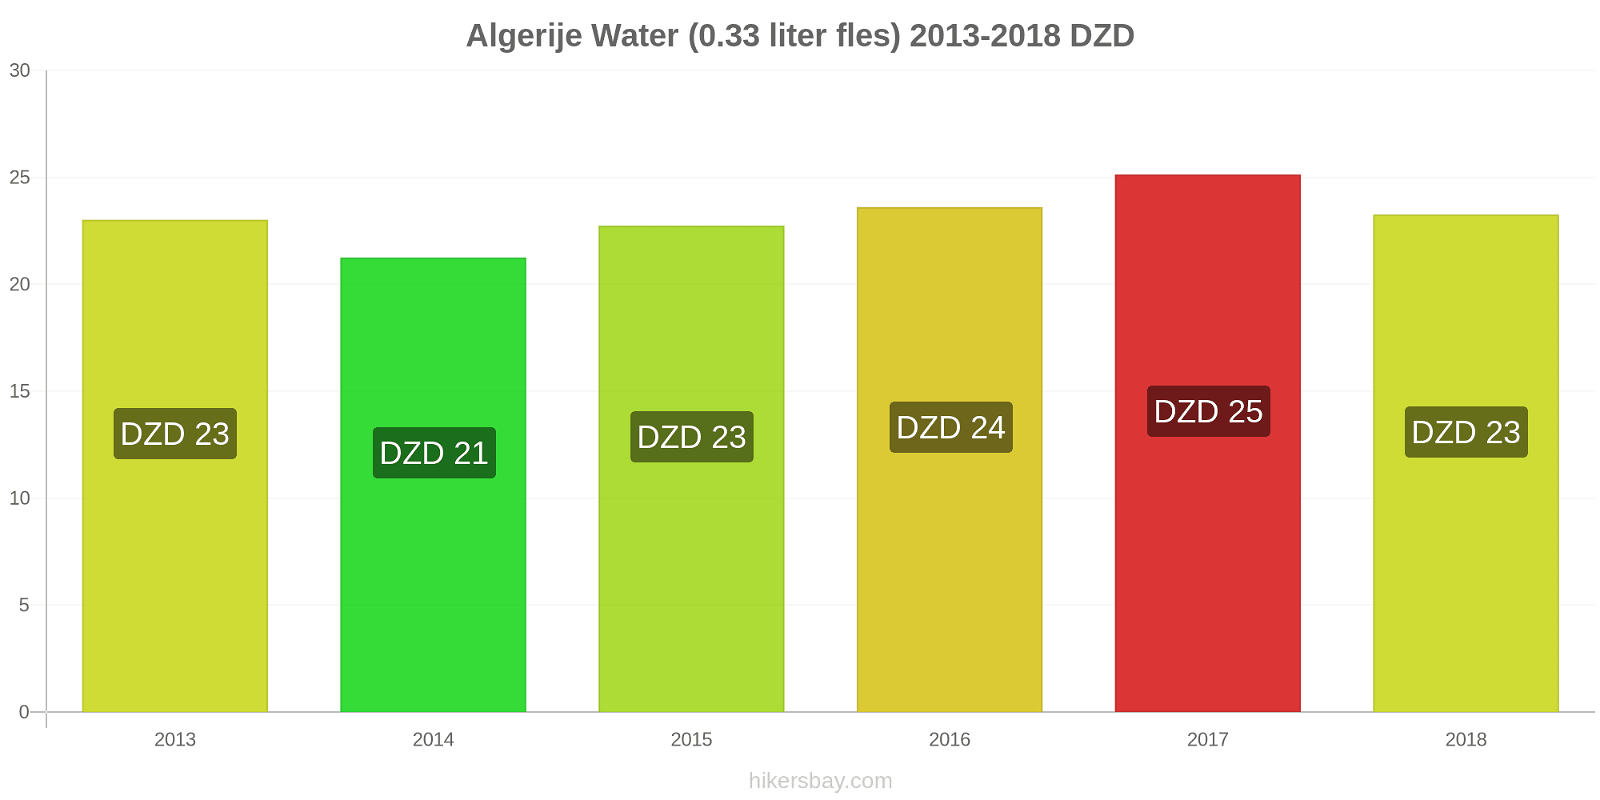 Algerije prijswijzigingen Water (0,33 liter fles) hikersbay.com